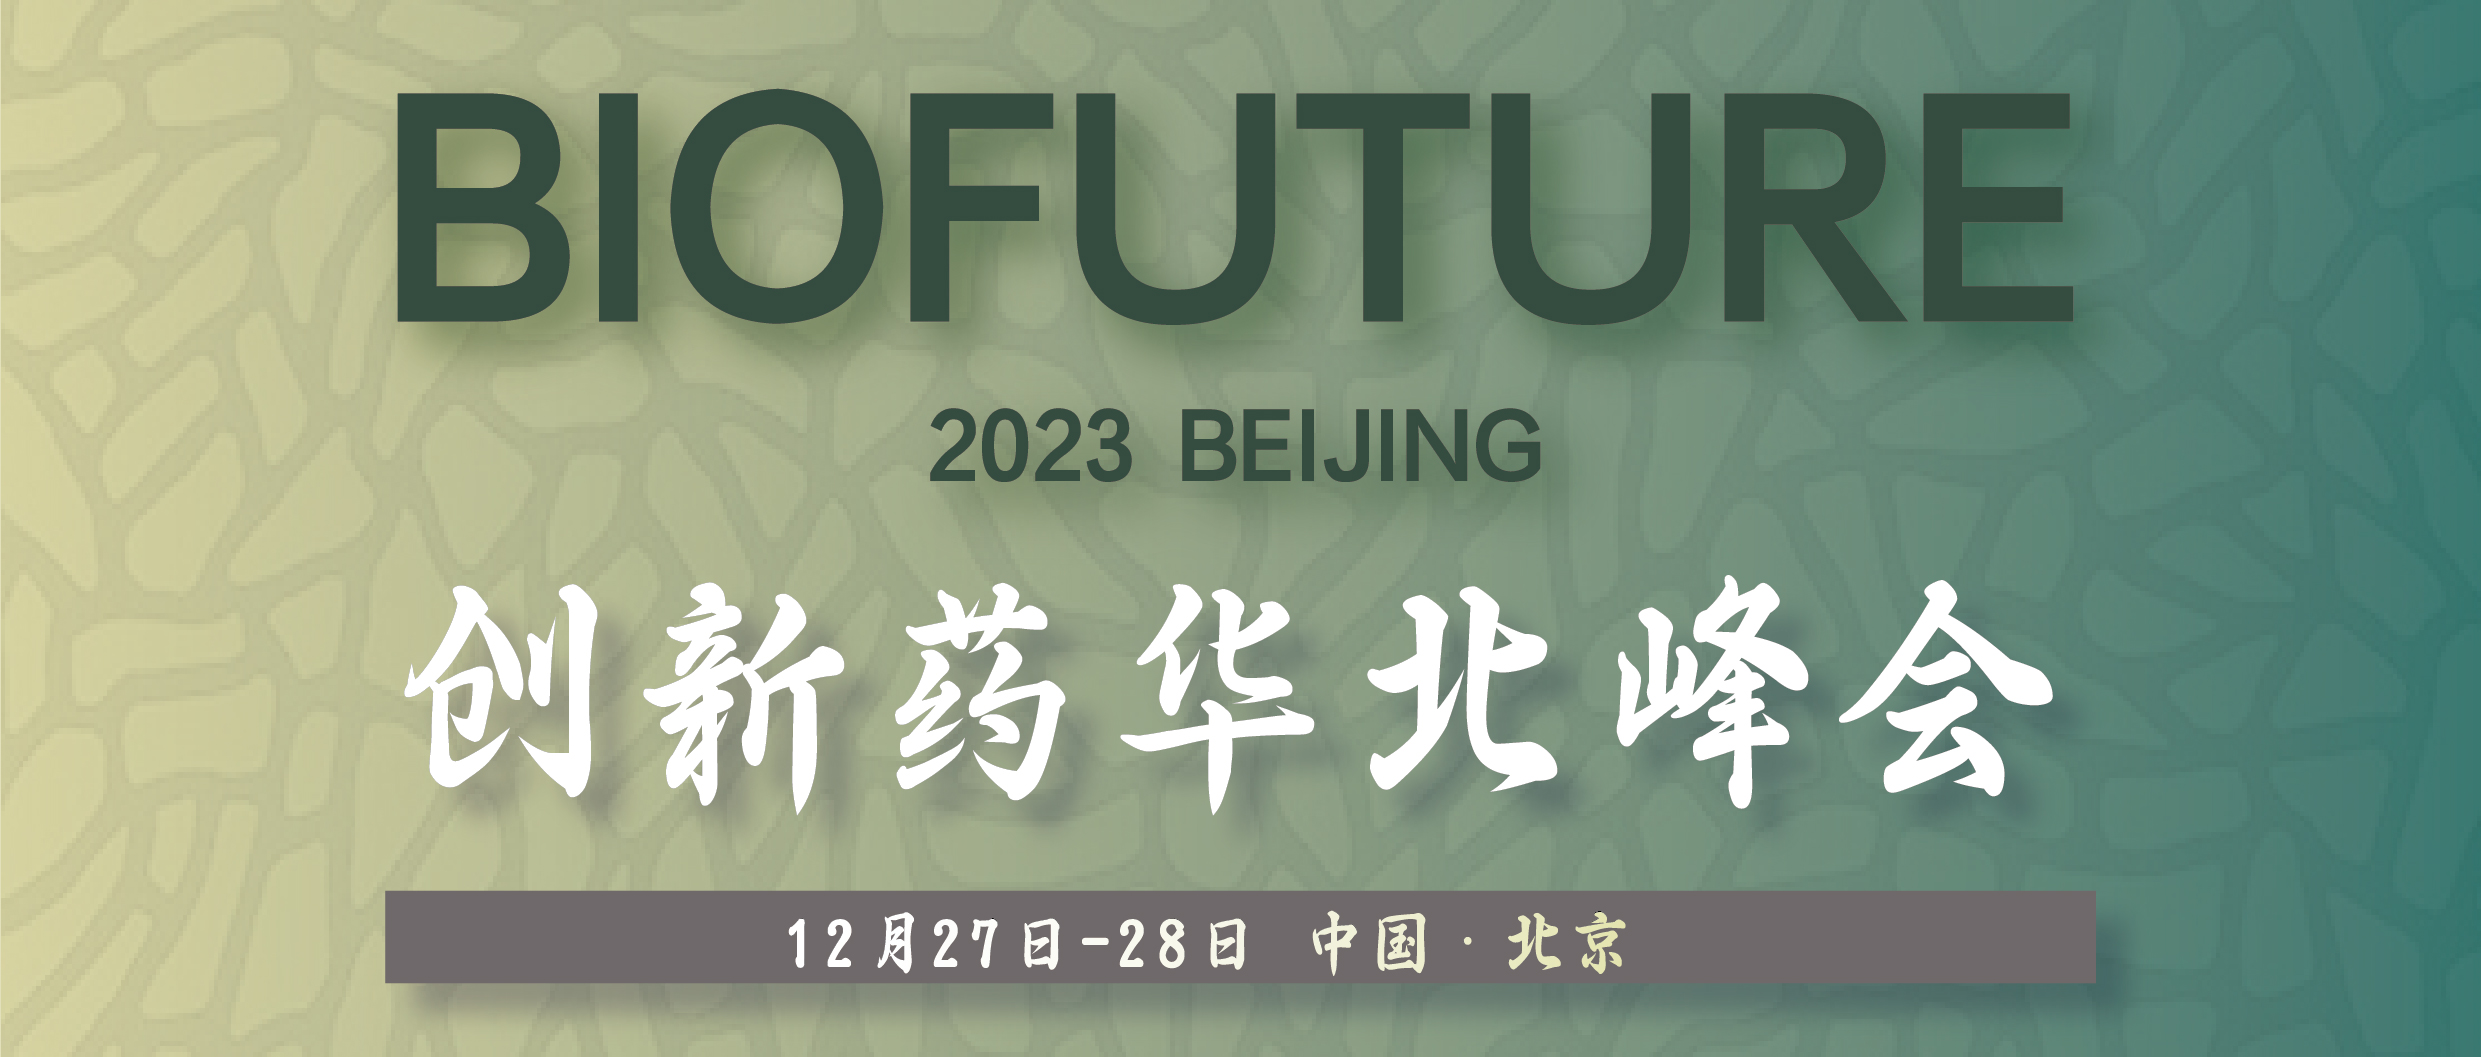 BioFuture 2023创新药华北峰会